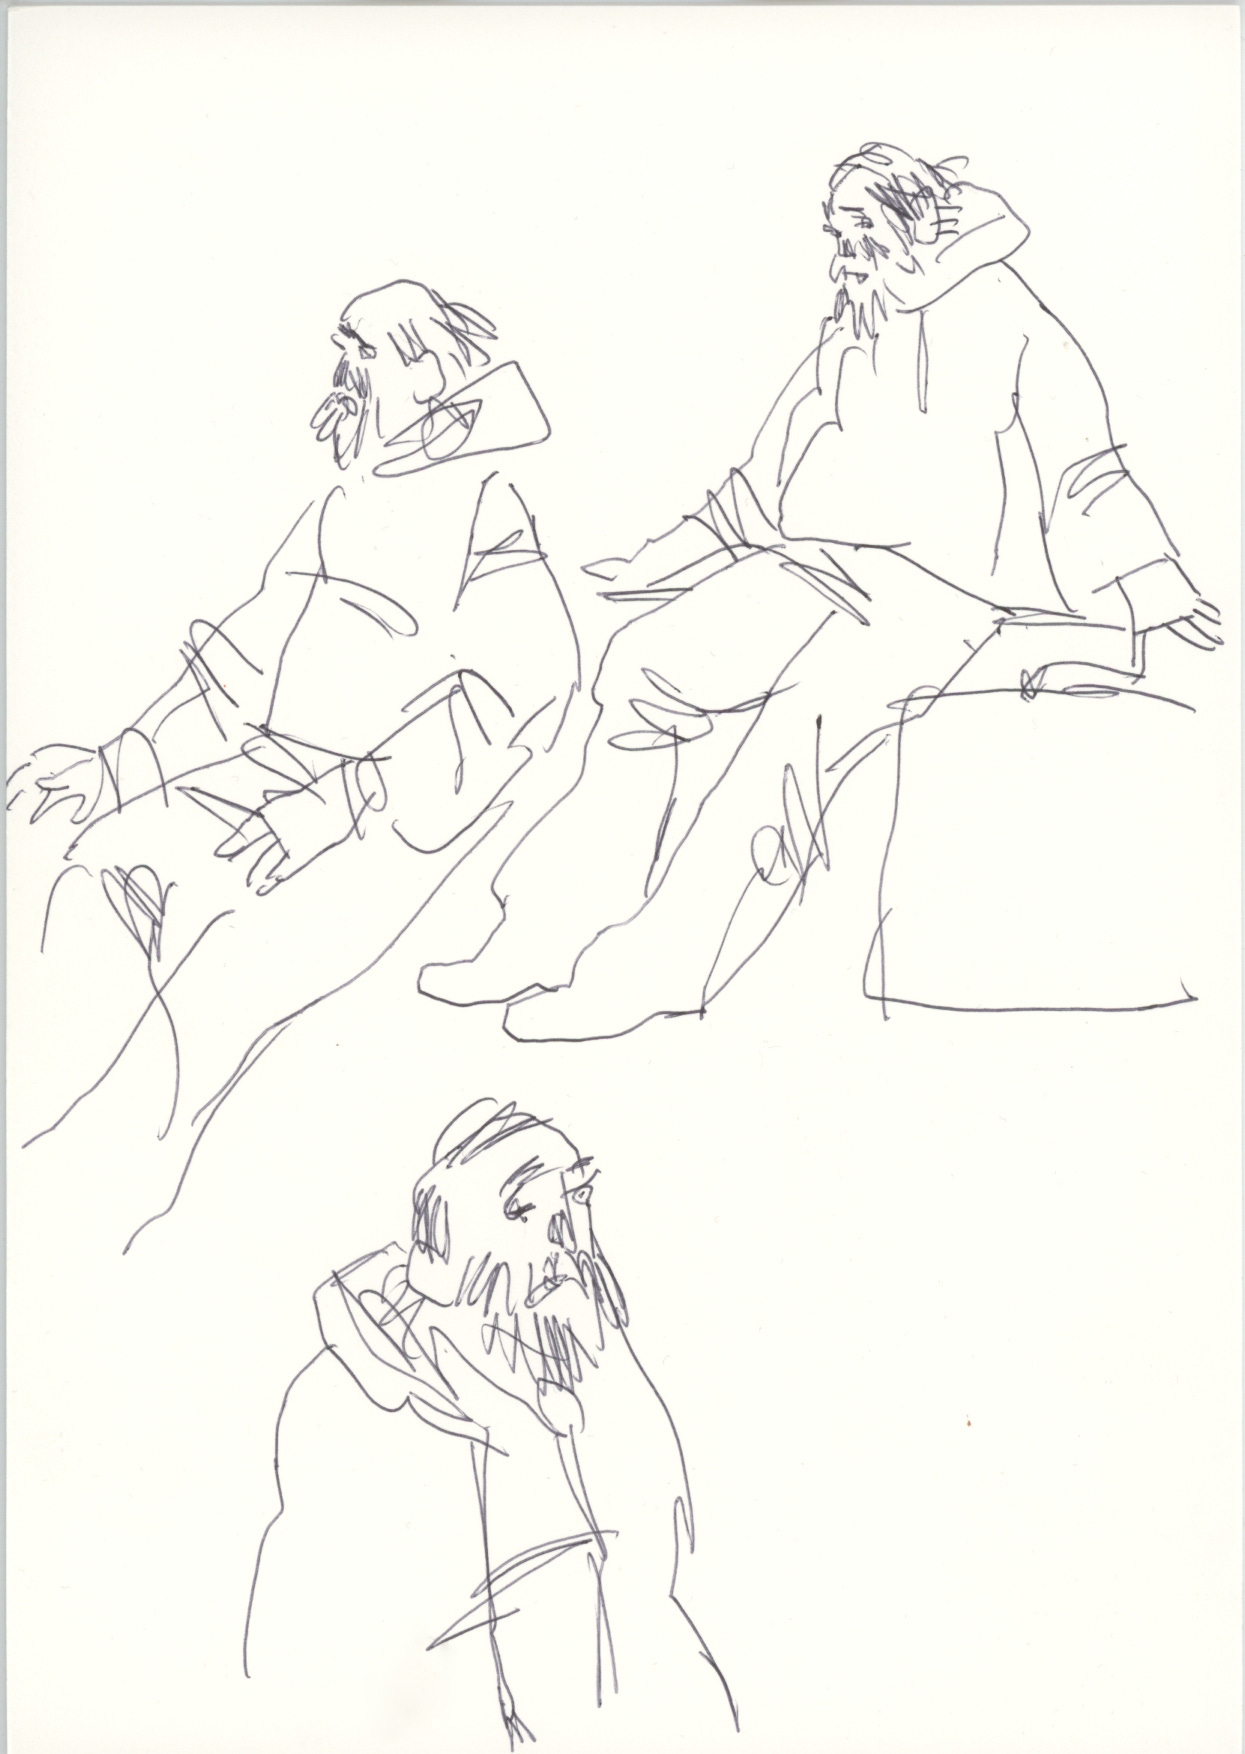 Sketcbook studies of a man.